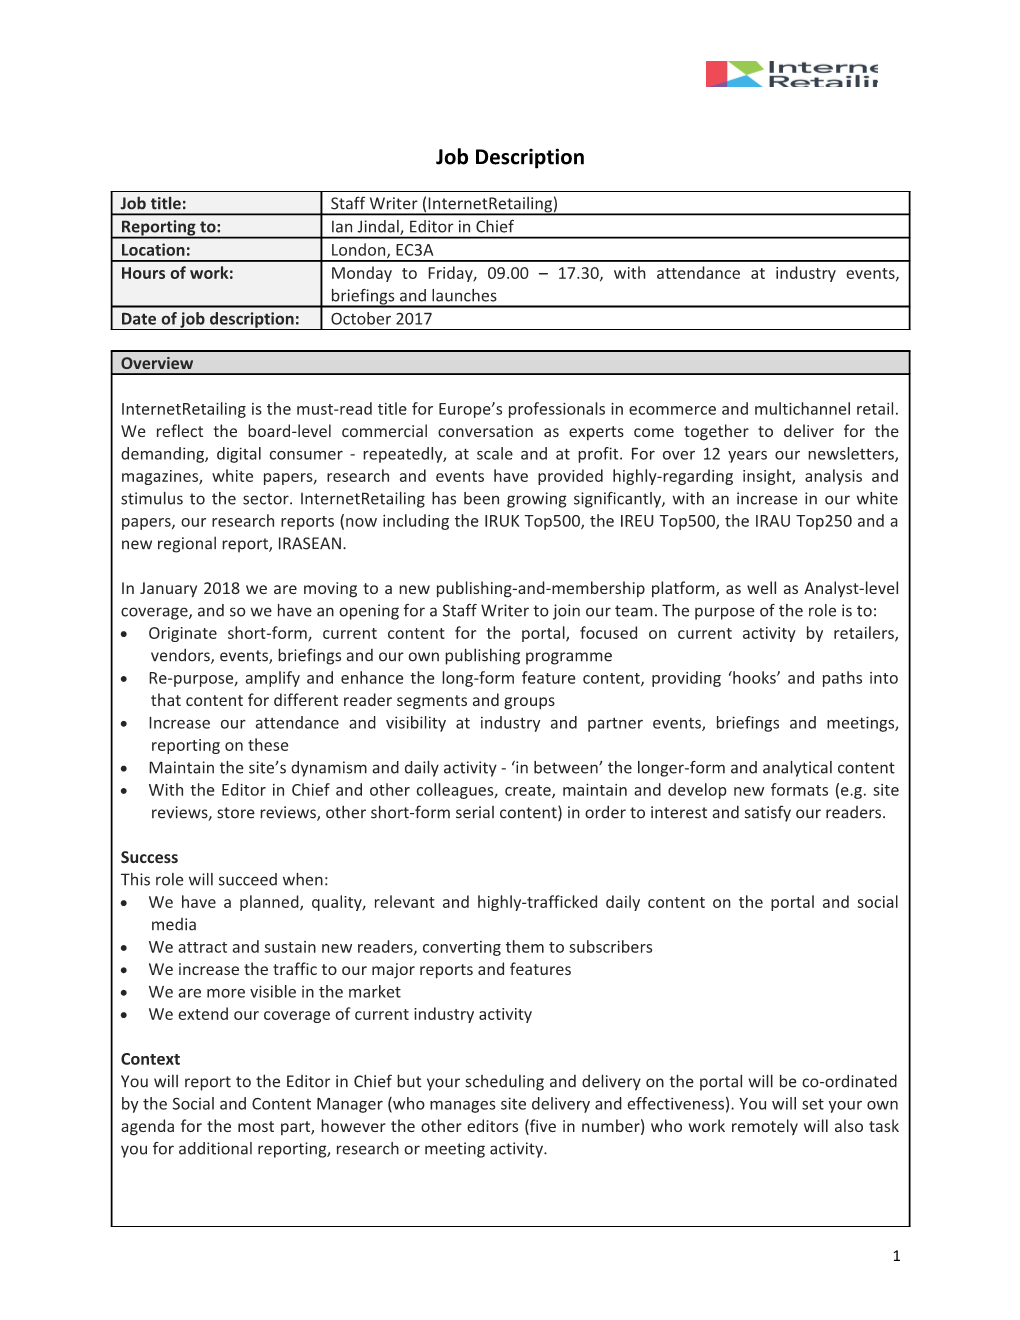 Job Description Form s2